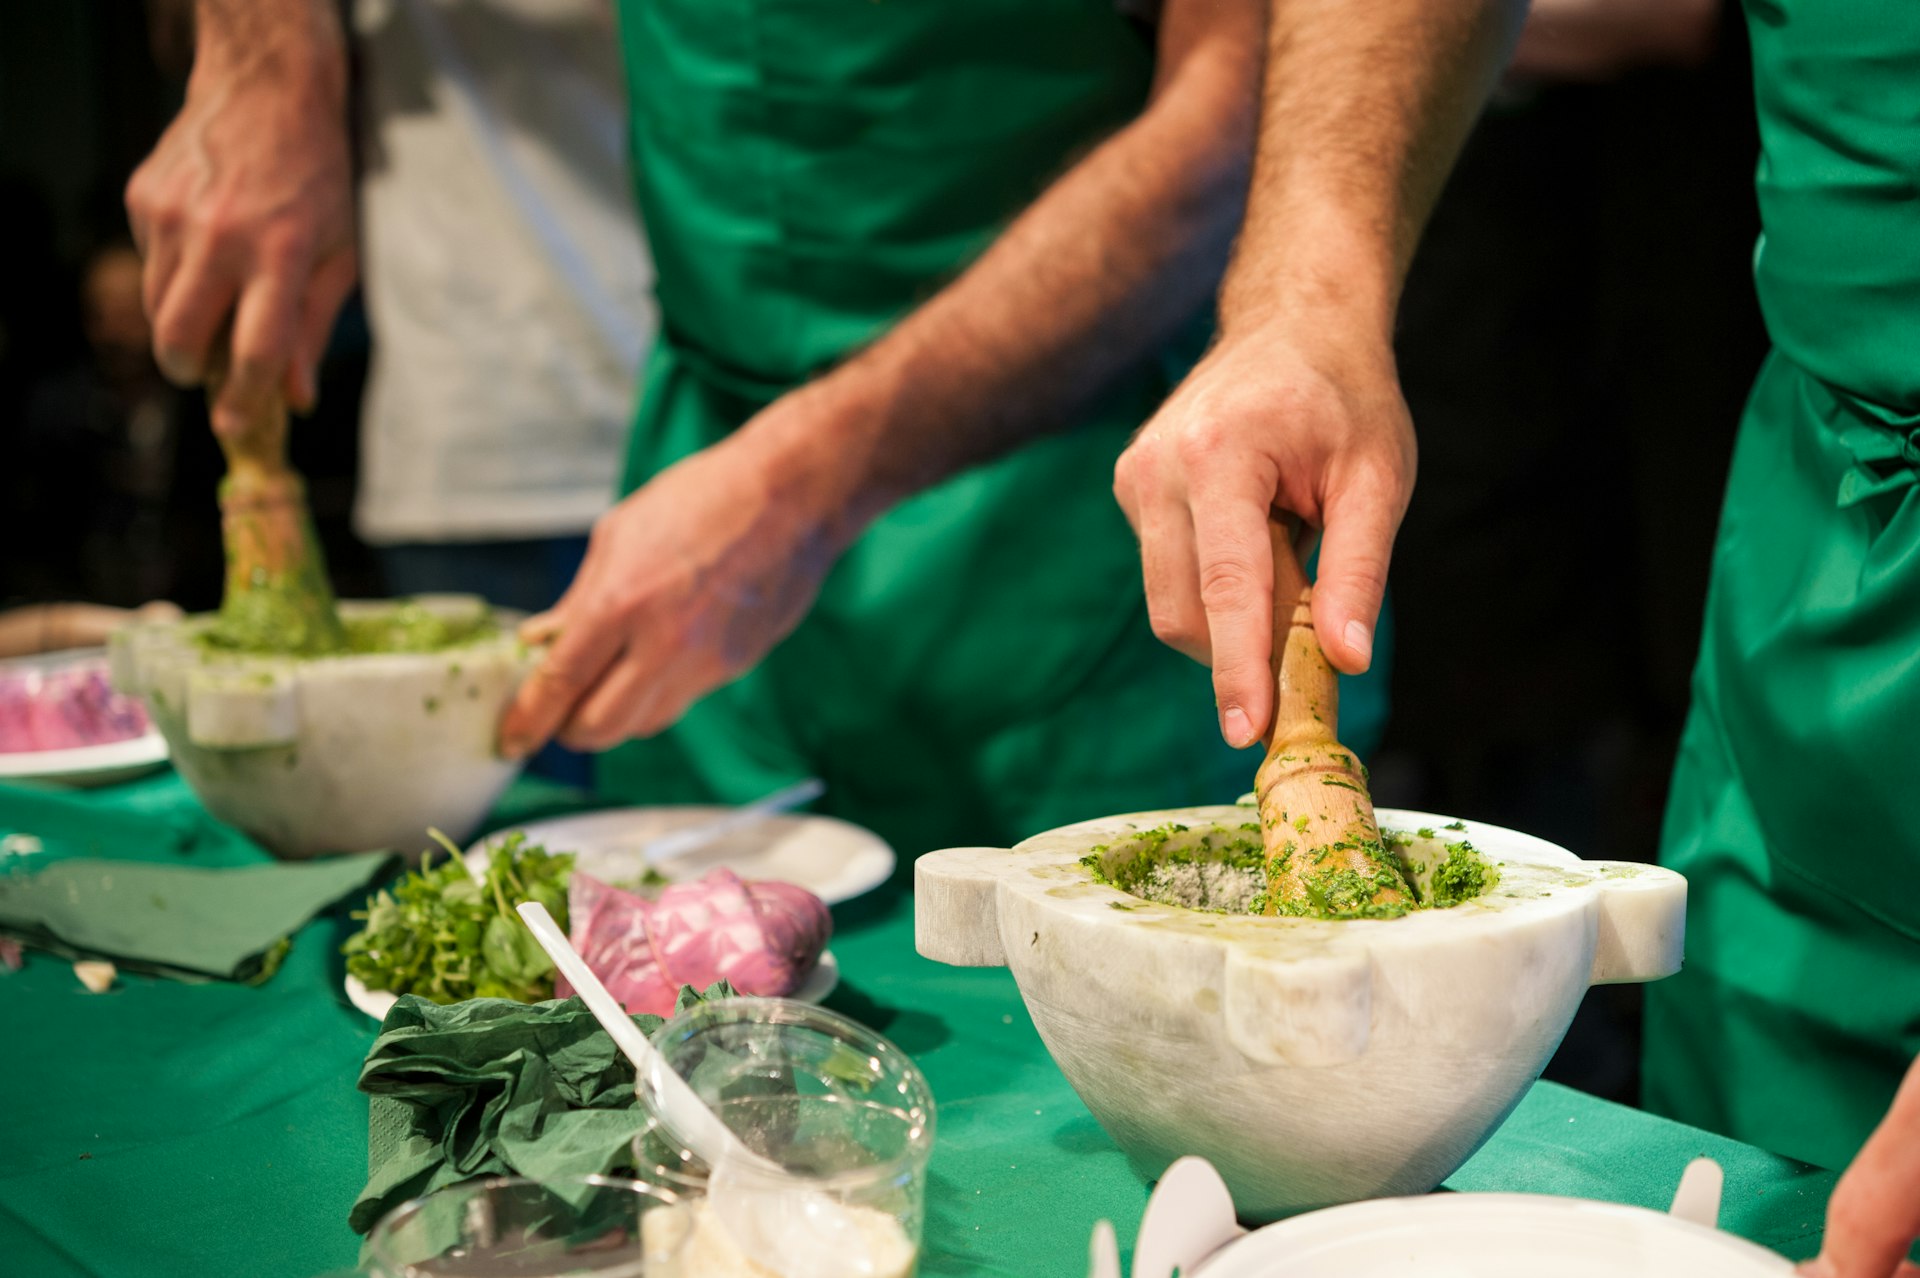 People working in a kitchen preparing Pesto basil sauce